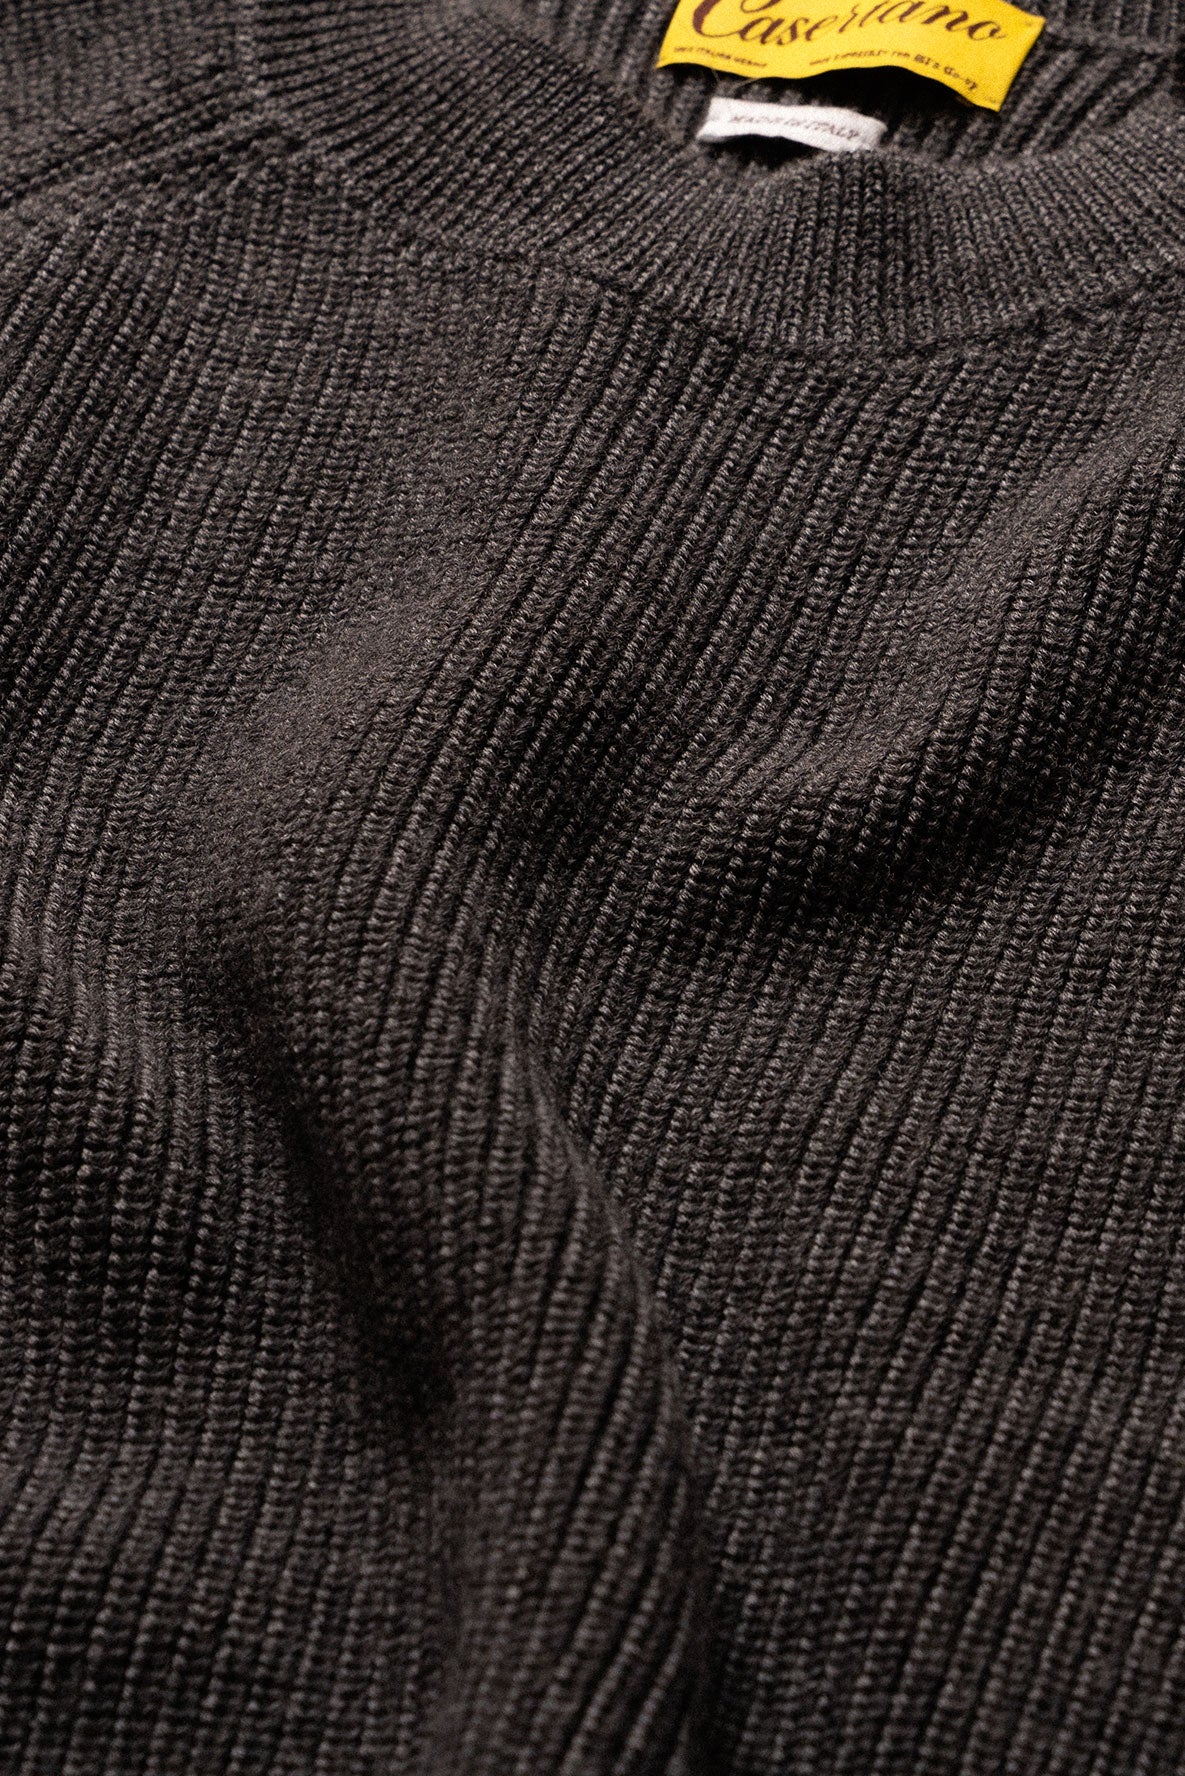 Casertano Anlgaise Stitch Sweater in Dark Heather Grey